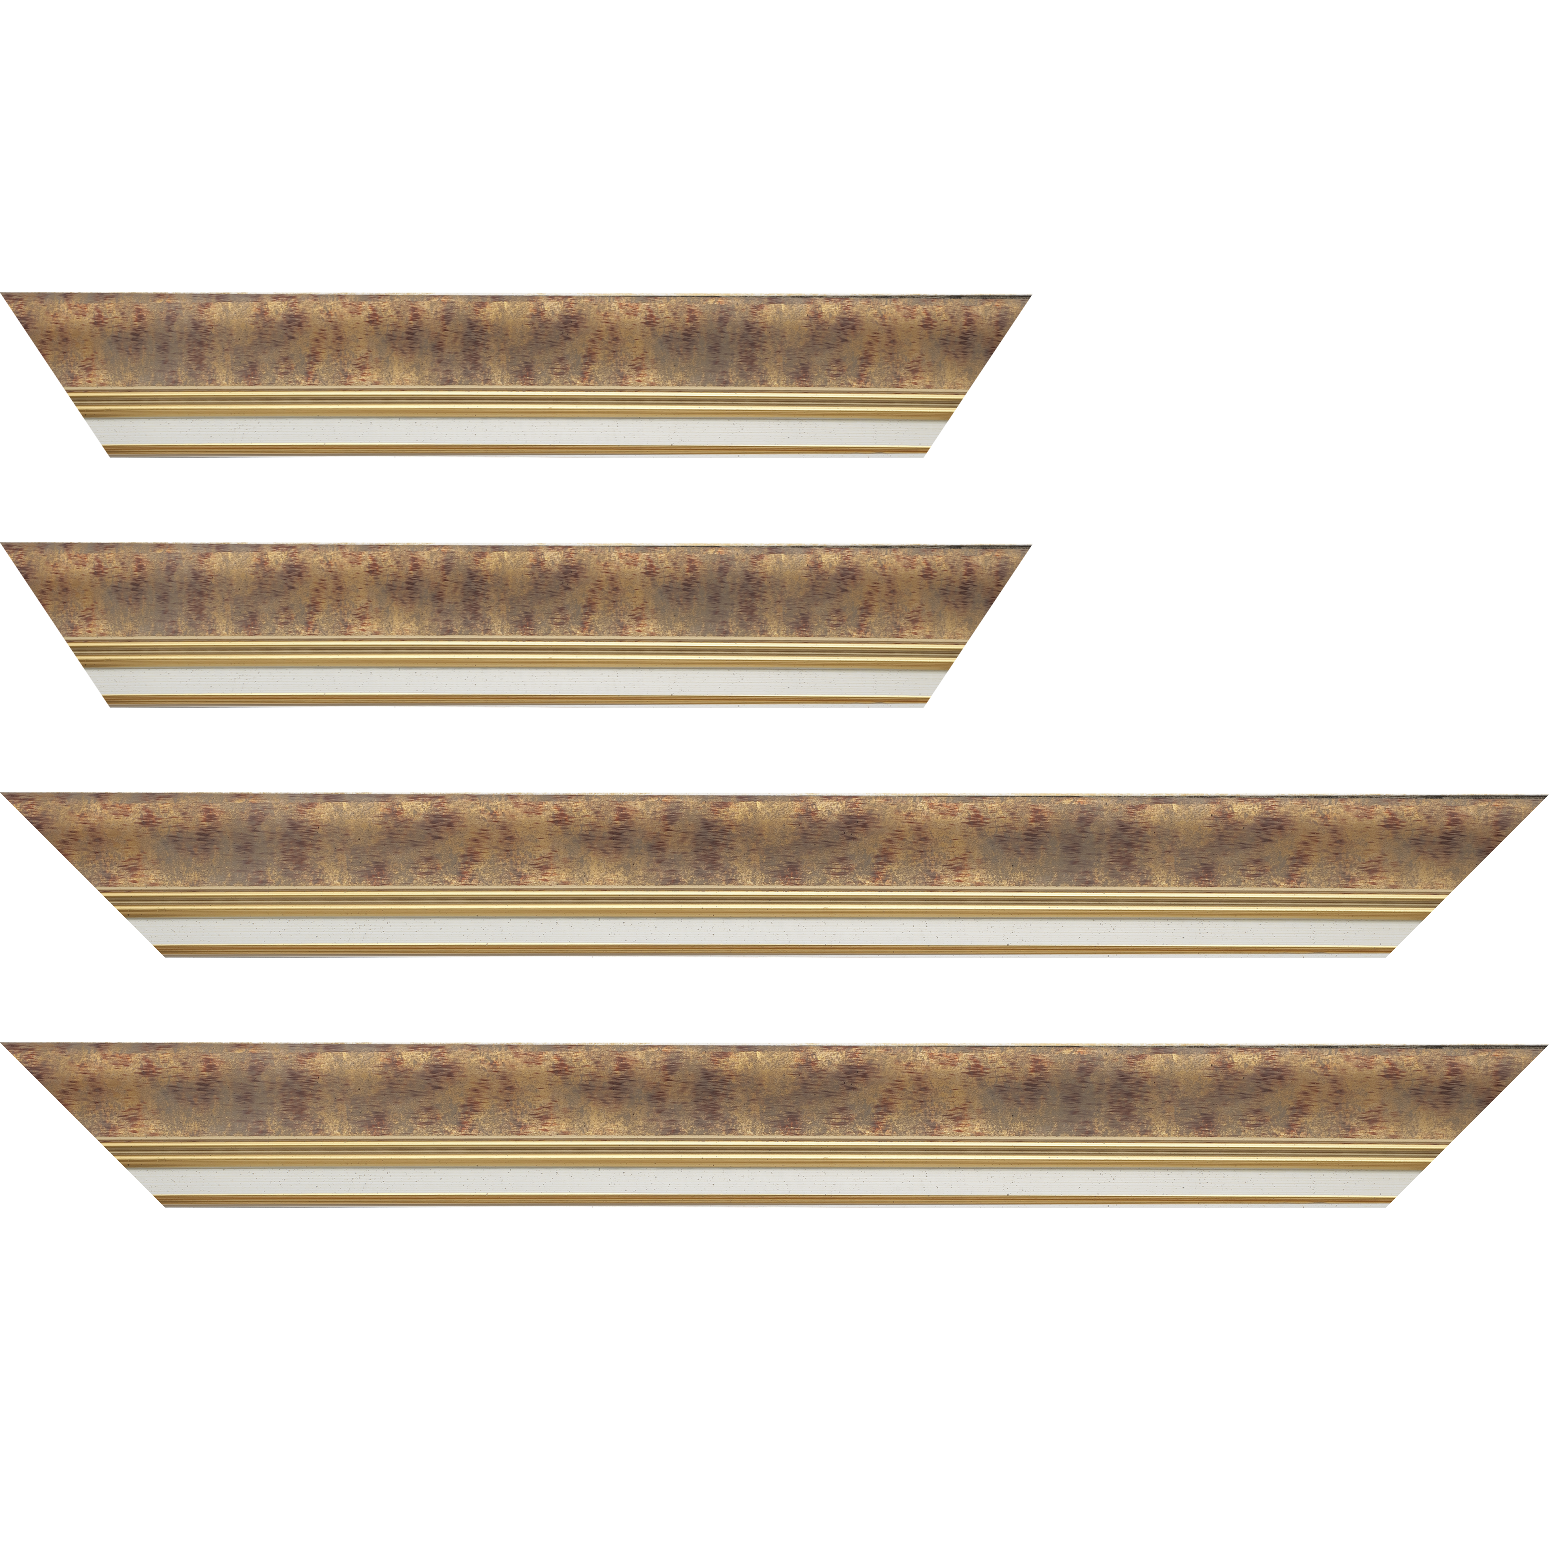 Baguette bois profil incurvé largeur 5.7cm de couleur bordeaux patiné fond or marie louise blanche mouchetée filet or intégré - 24x30